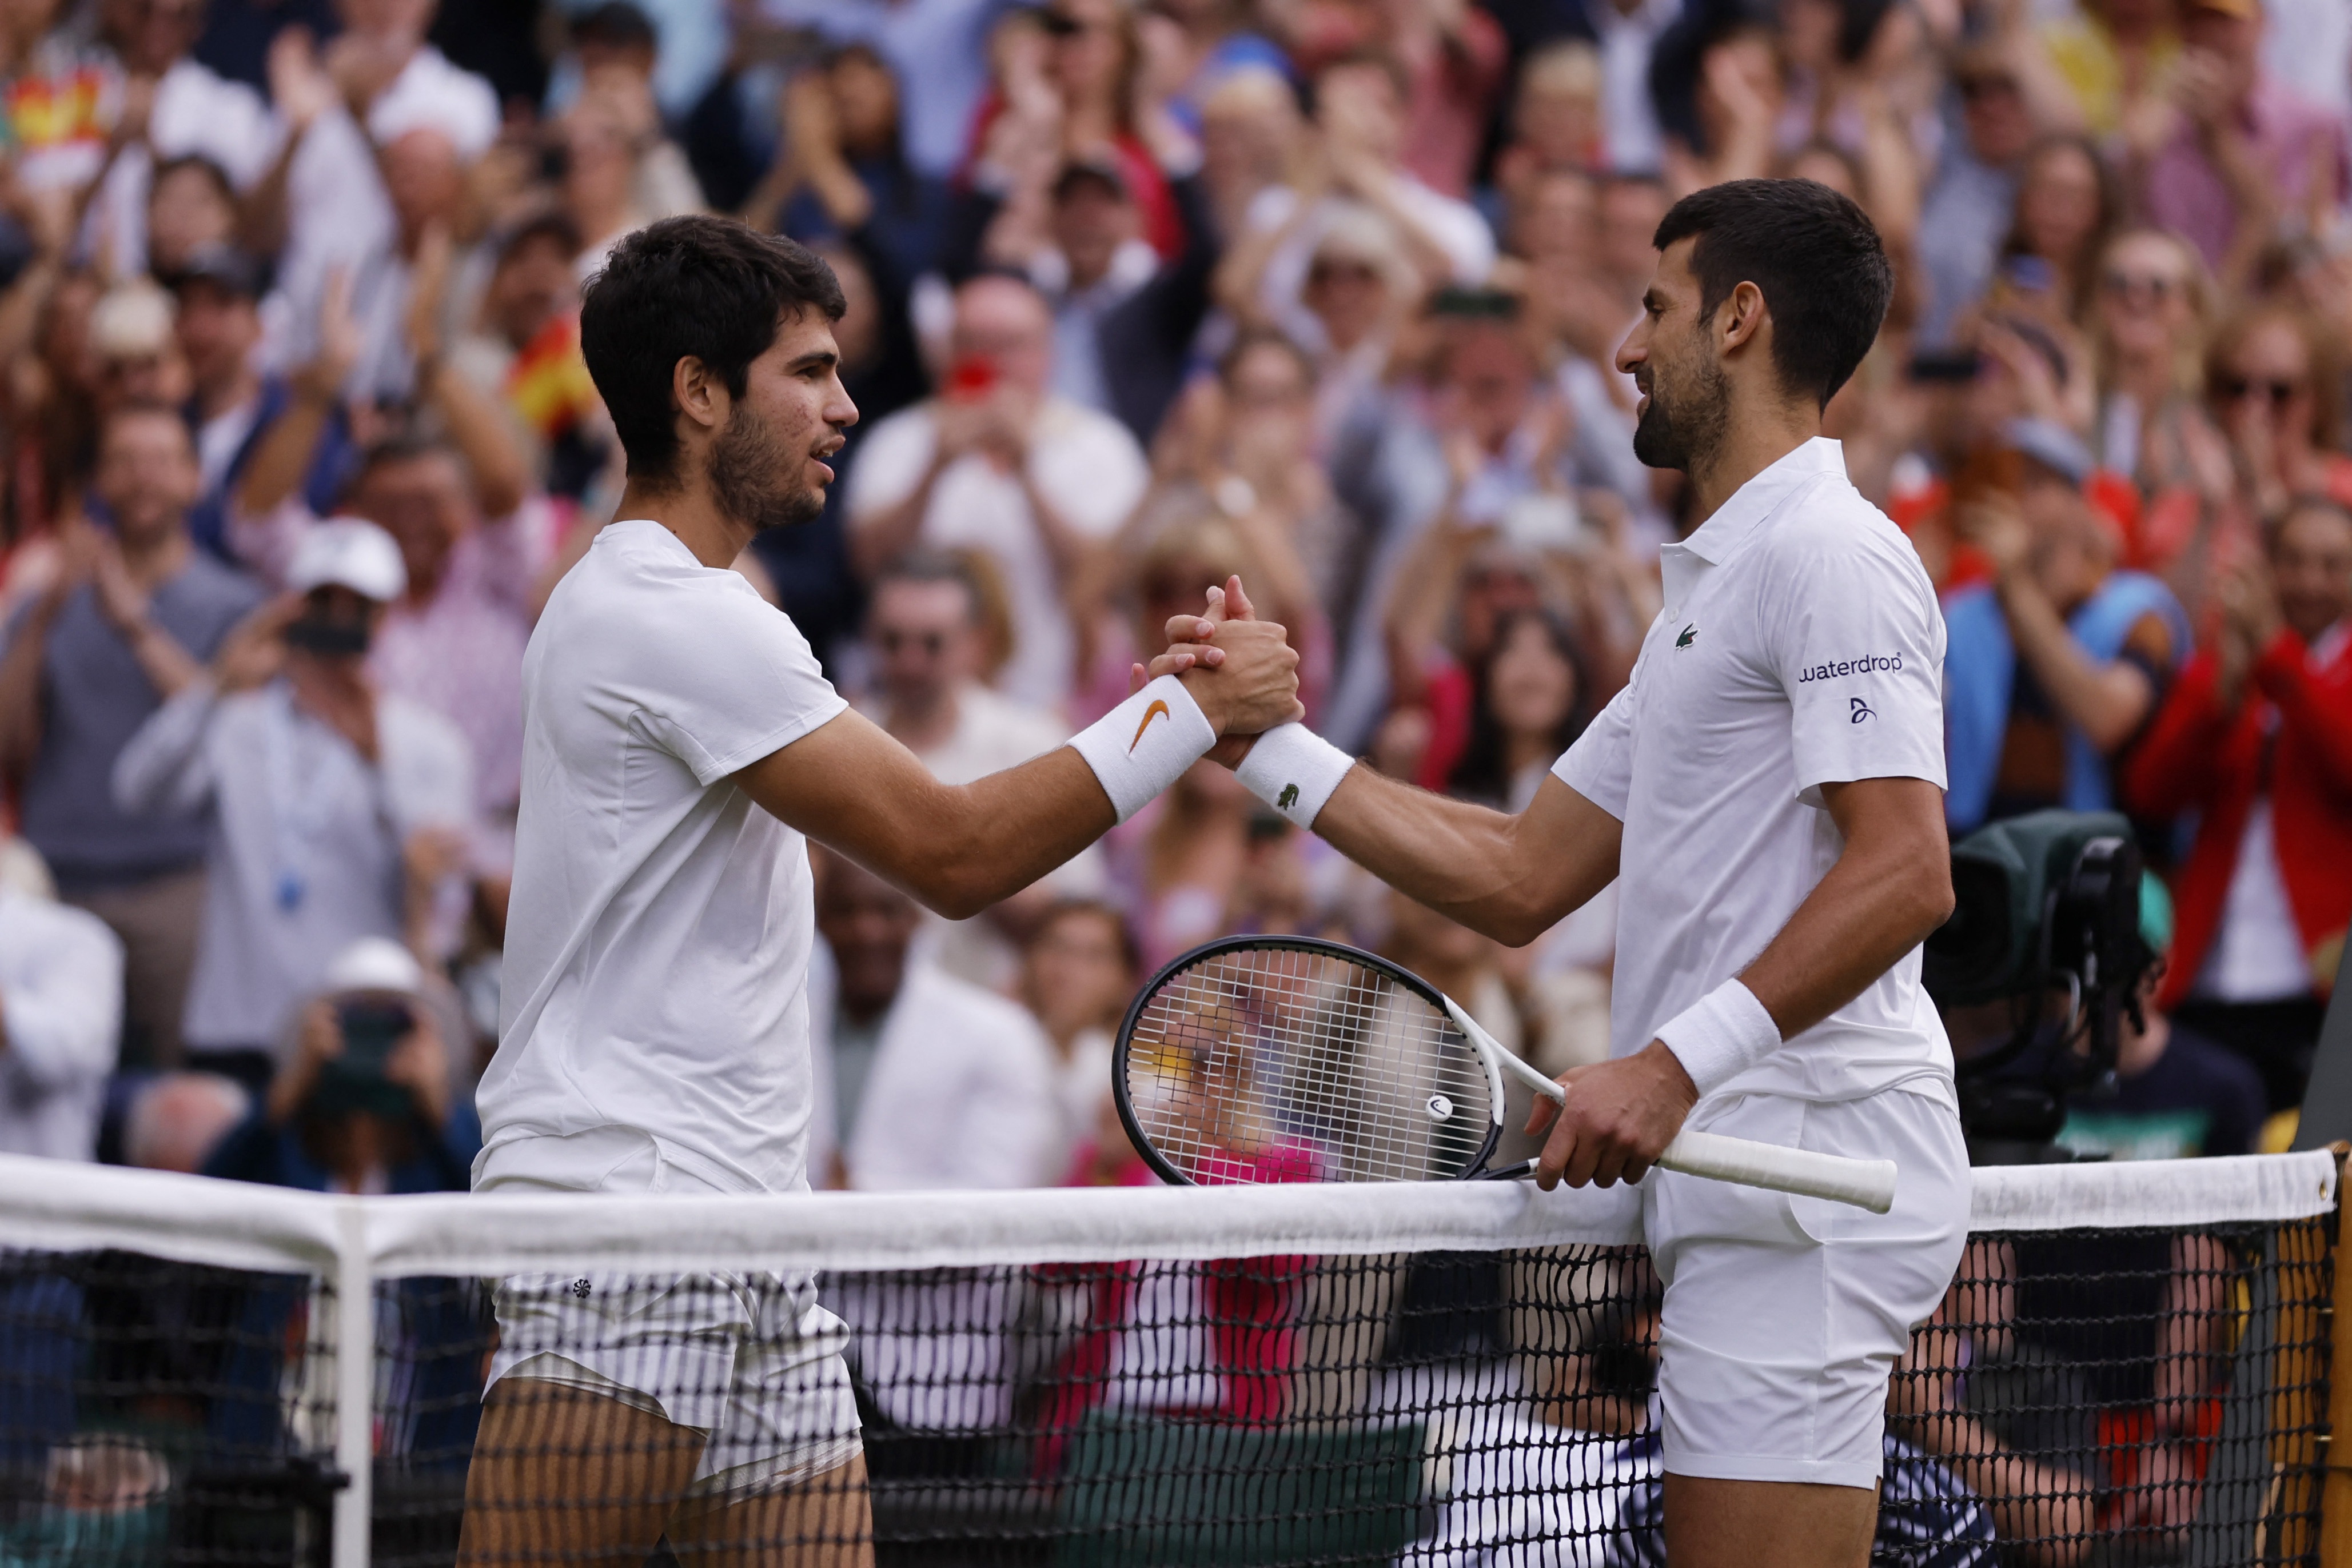 Chuyên gia: "Alcaraz sẽ đánh bại Djokovic trong trận chung kết Wimbledon"